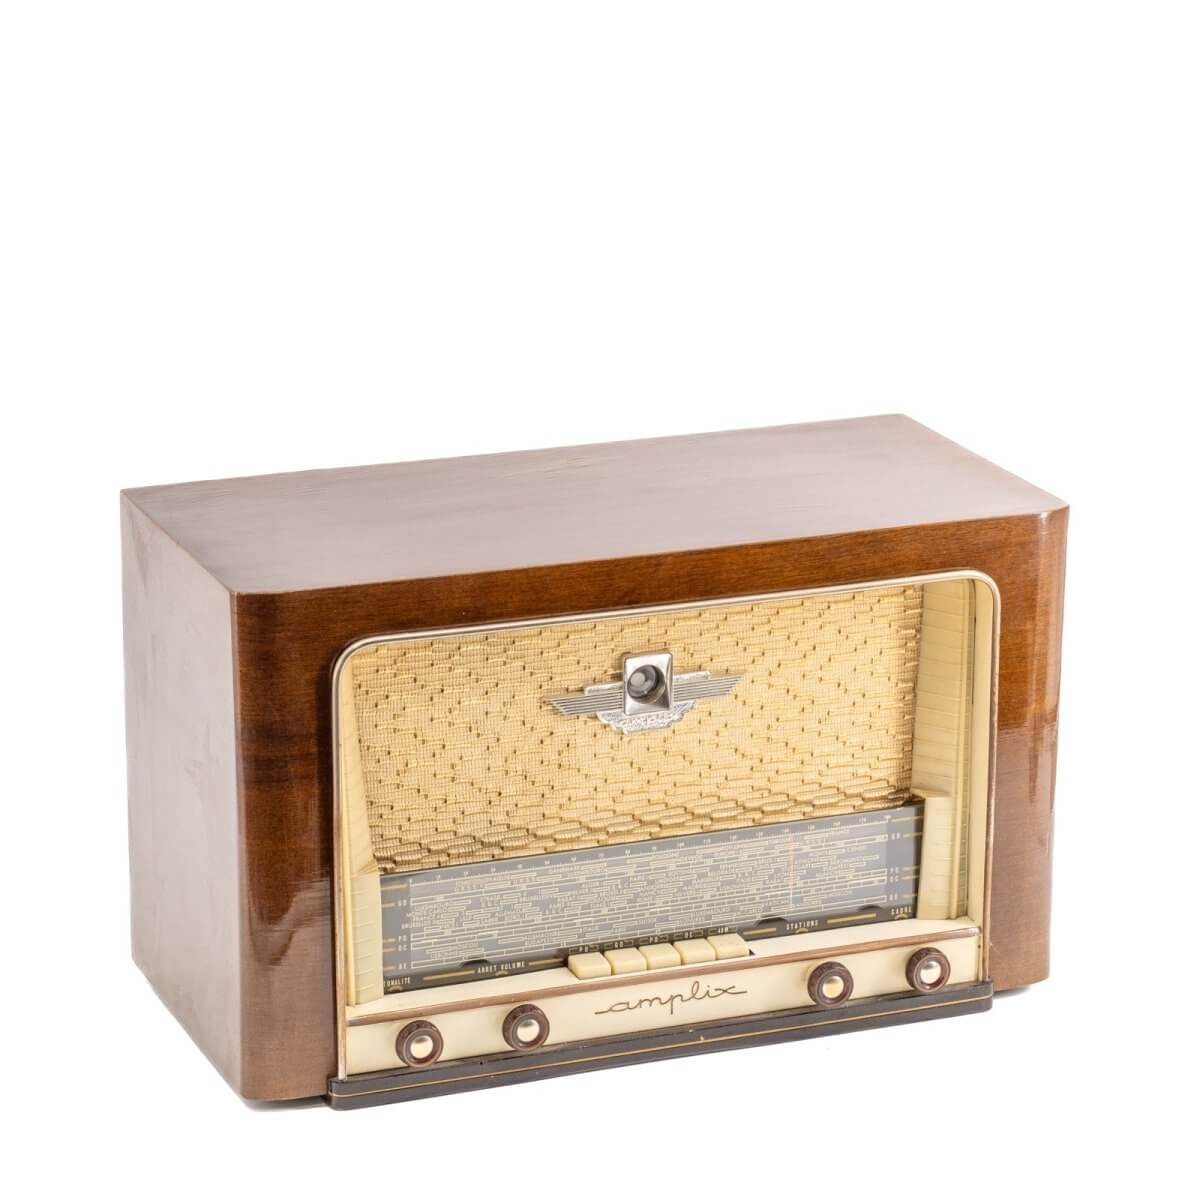 Radio Bluetooth Amplix Vintage 50’S enceinte connectée française haut de gamme prodige radio vintage